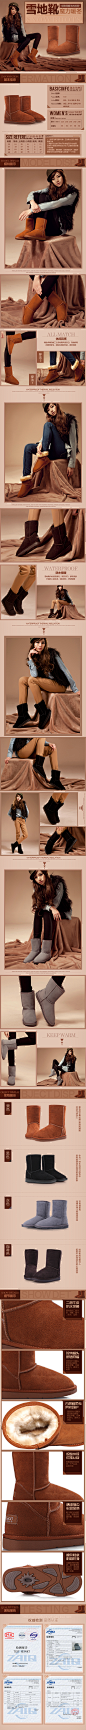 网页设计师马鹏利 设计的雪地靴宝贝描述